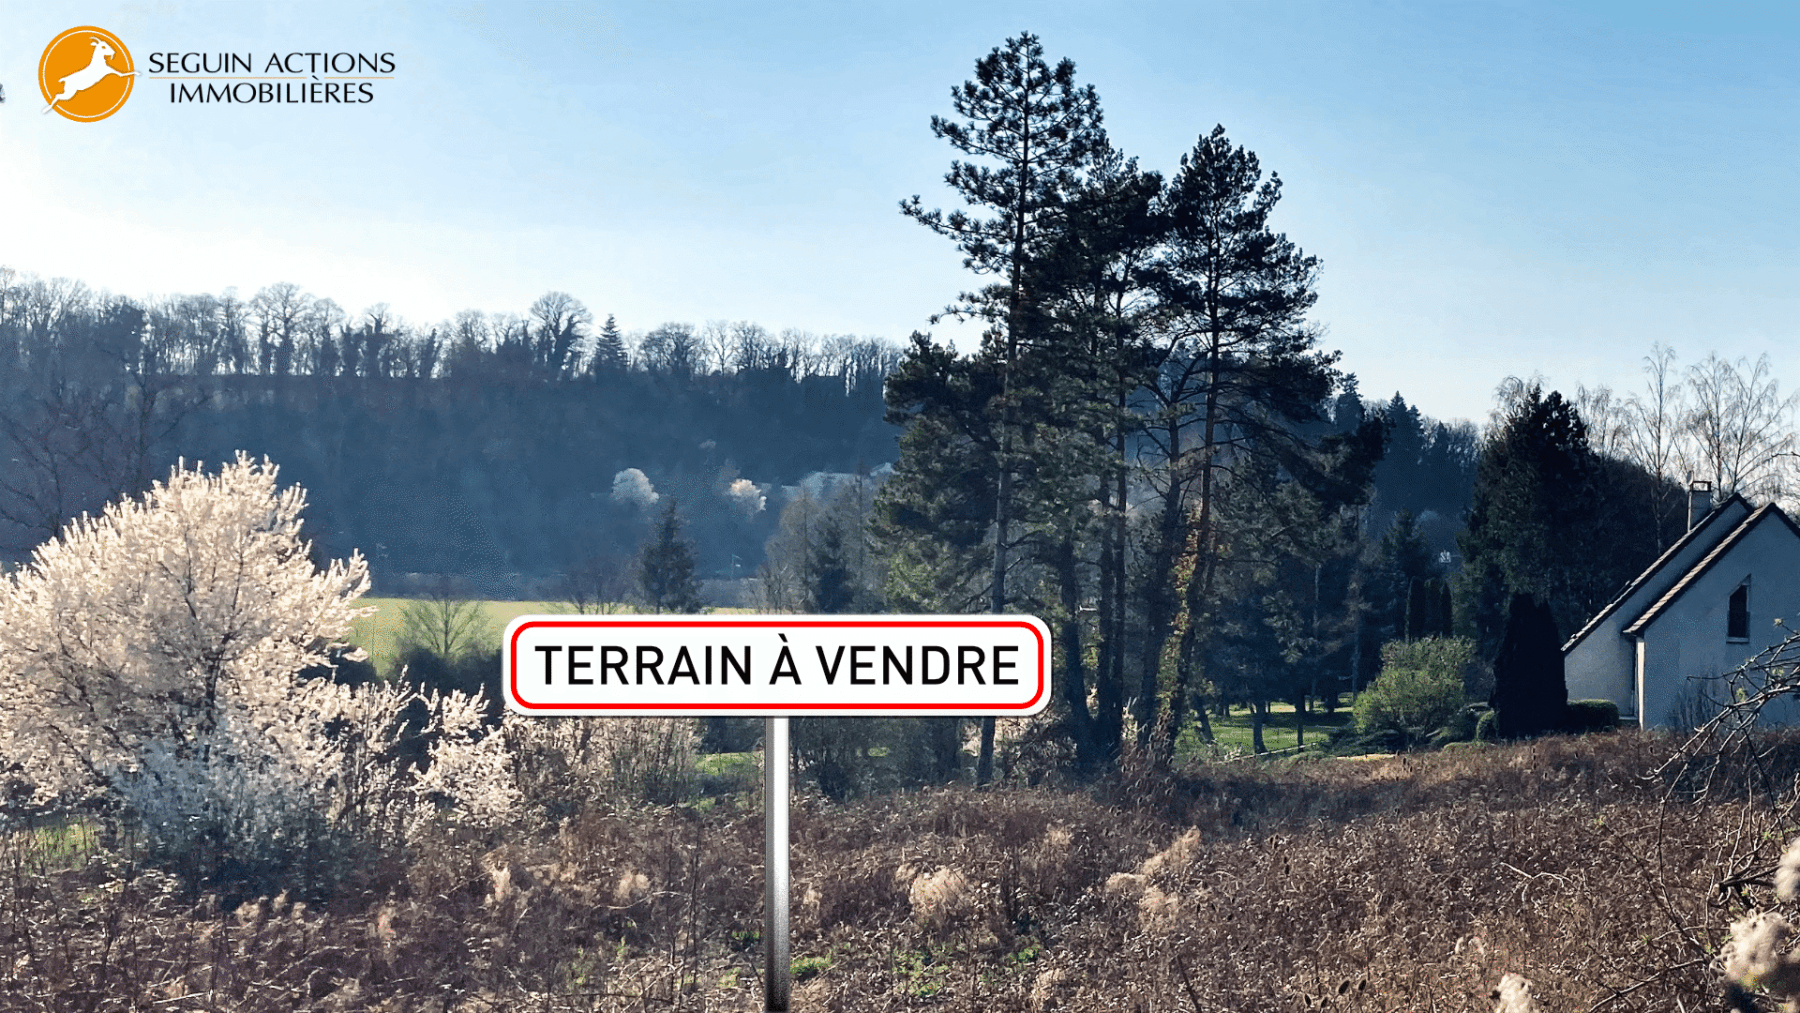 Seguin Actions Immobilières Photographie environnement Terrain à Vendre 41 chemin de Valentin à Besançon